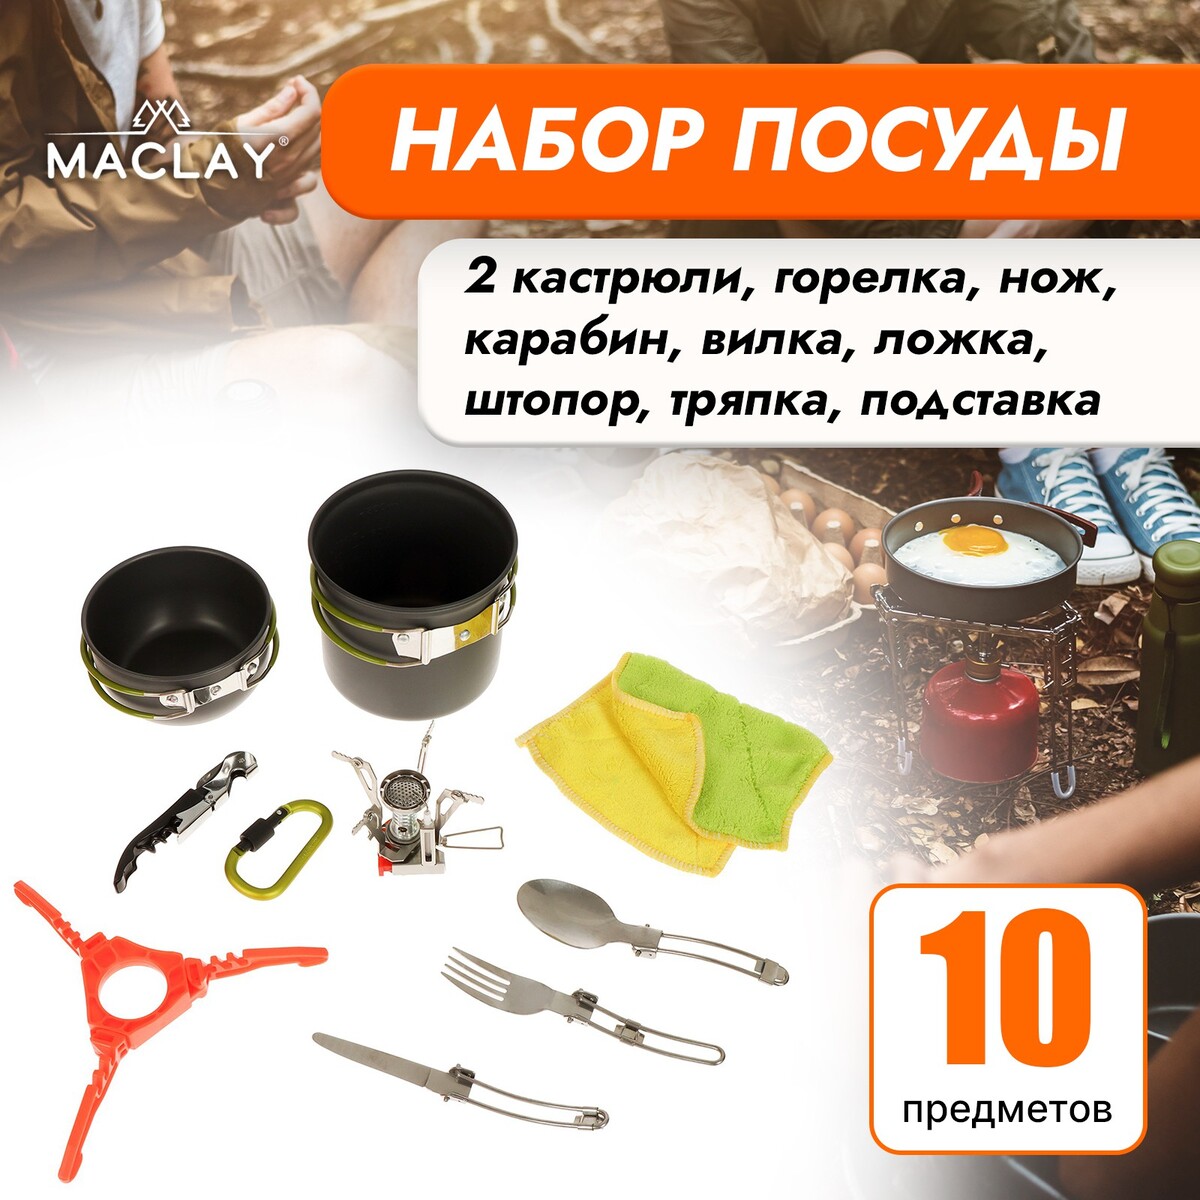 Набор туристической посуды maclay: 2 кастрюли, приборы, горелка, штопор, тряпка, карабин набор штопор пробка каплеуловитель